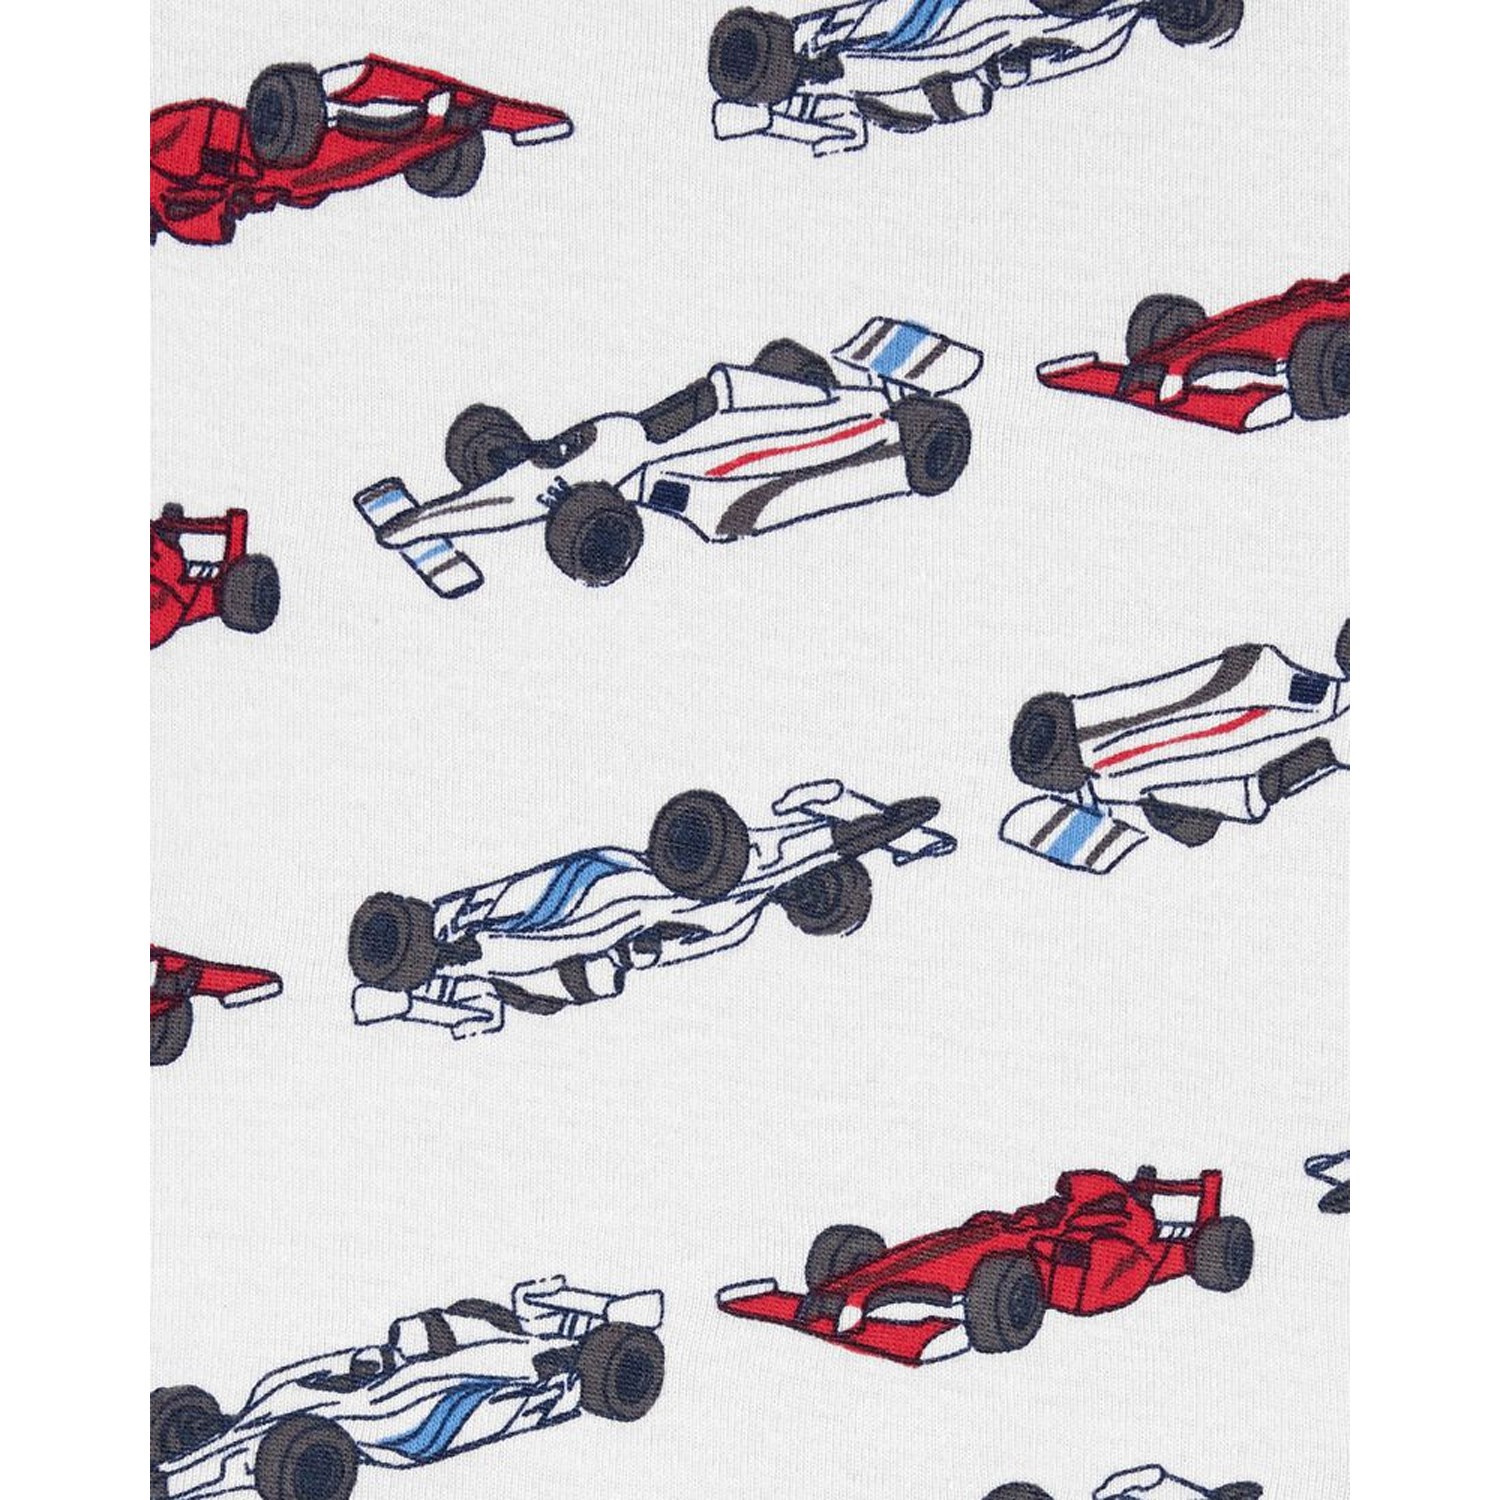 Carter's Araba Desenli 4'lü Bebek Pijama Takımı 1I555210 Kırmızı-Beyaz